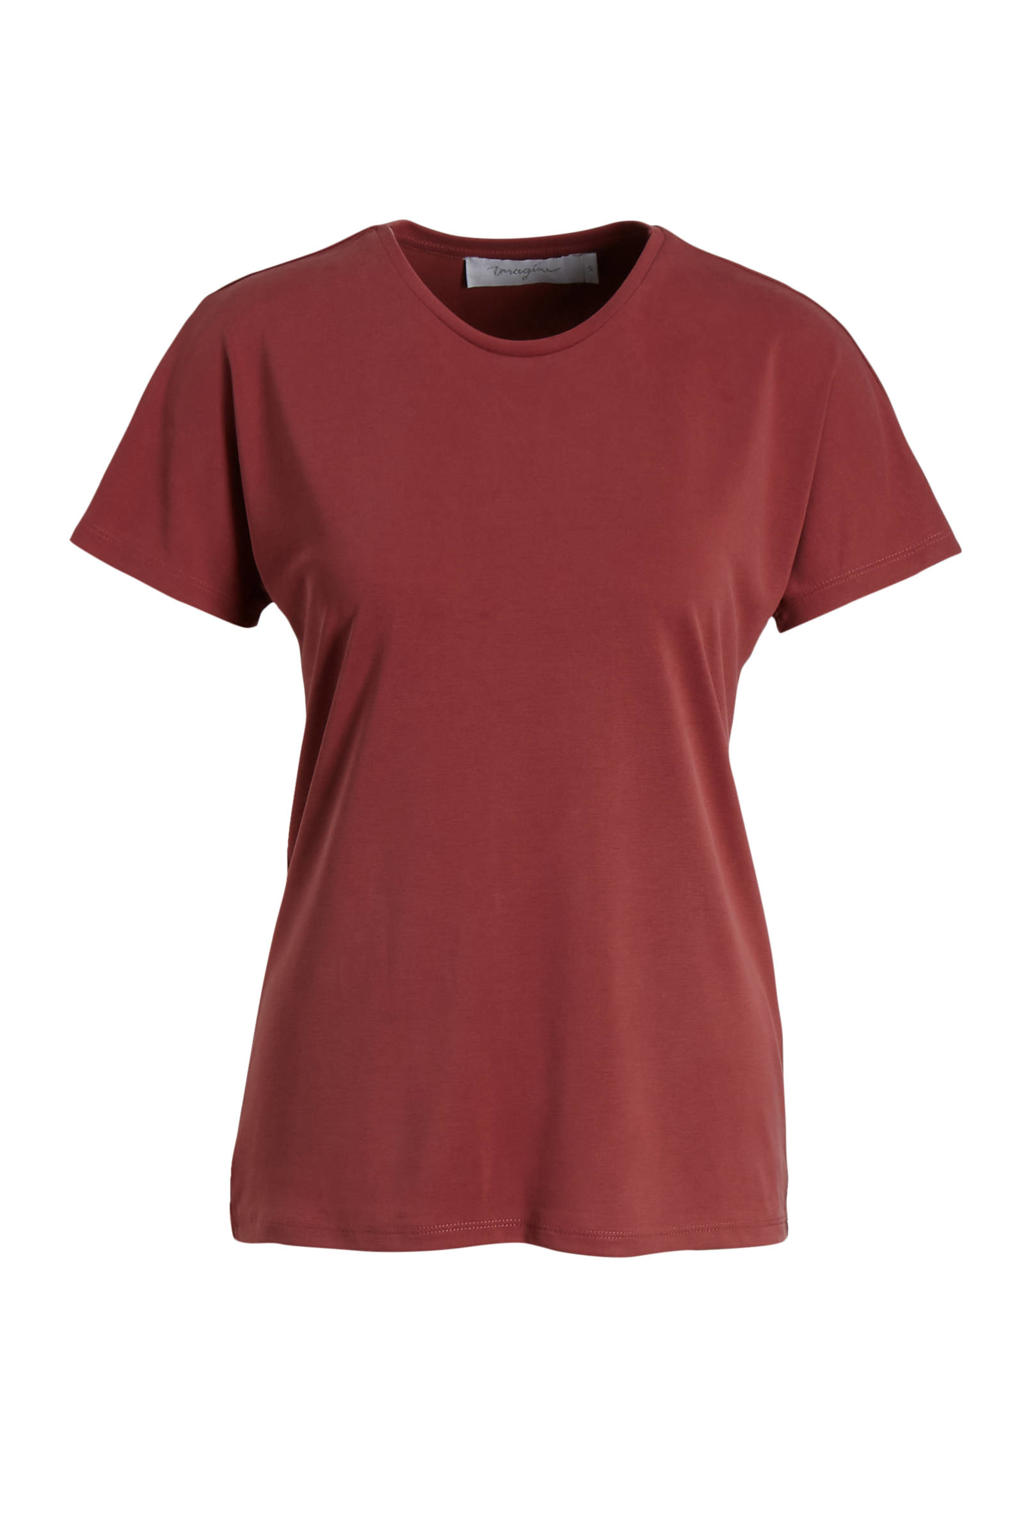 Roodbruine dames Imagine T-shirt cupro van modal met korte mouwen en ronde hals